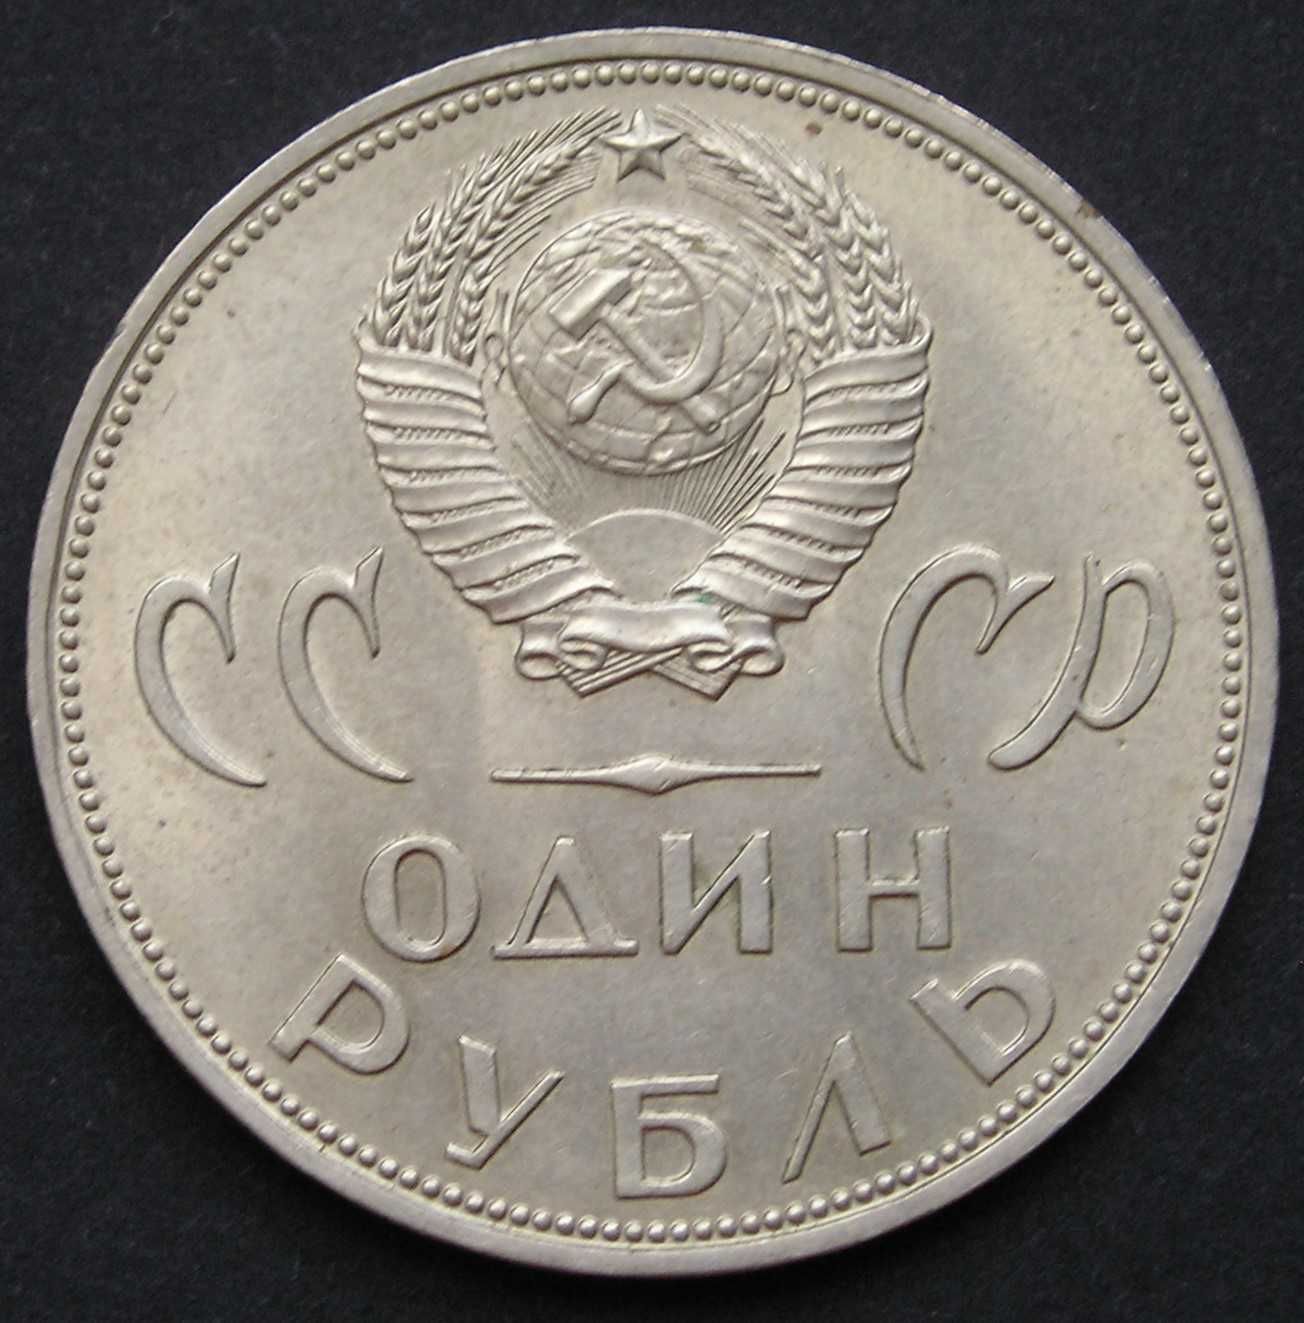 Rosja Radziecka ZSRR 1 rubel 1965 - zwycięstwo nad faszyzmem - stan 2